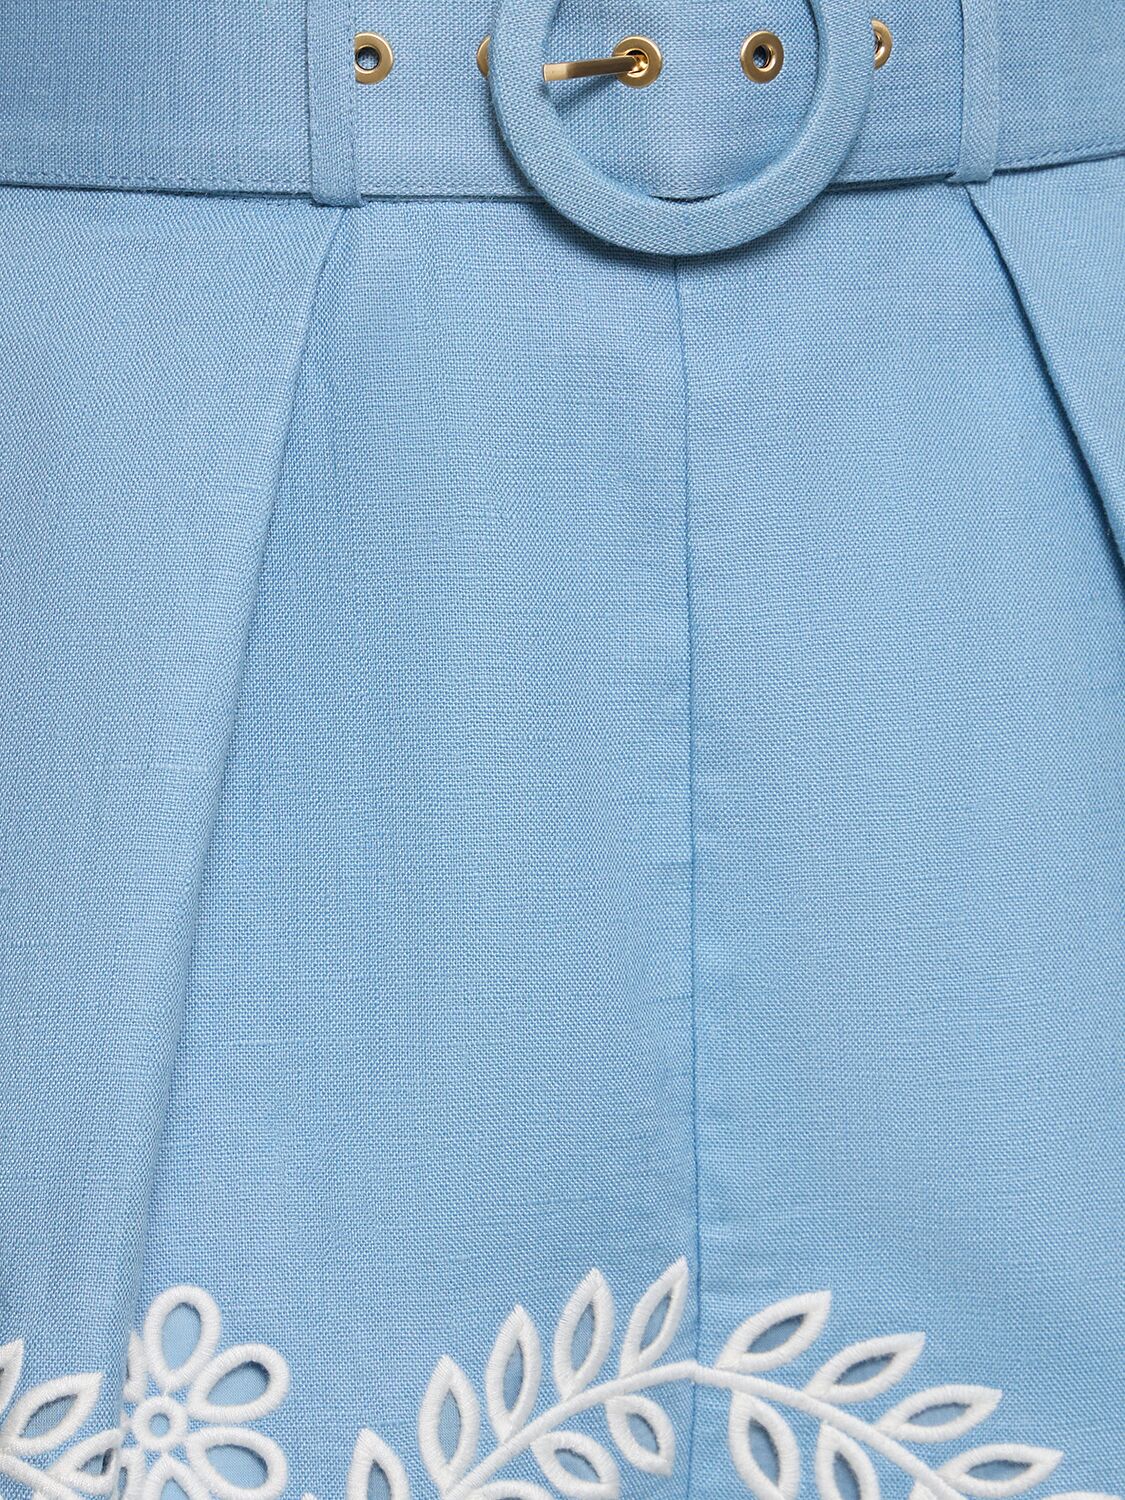 Shop Zimmermann Junie Embroidered Linen Shorts In Blue